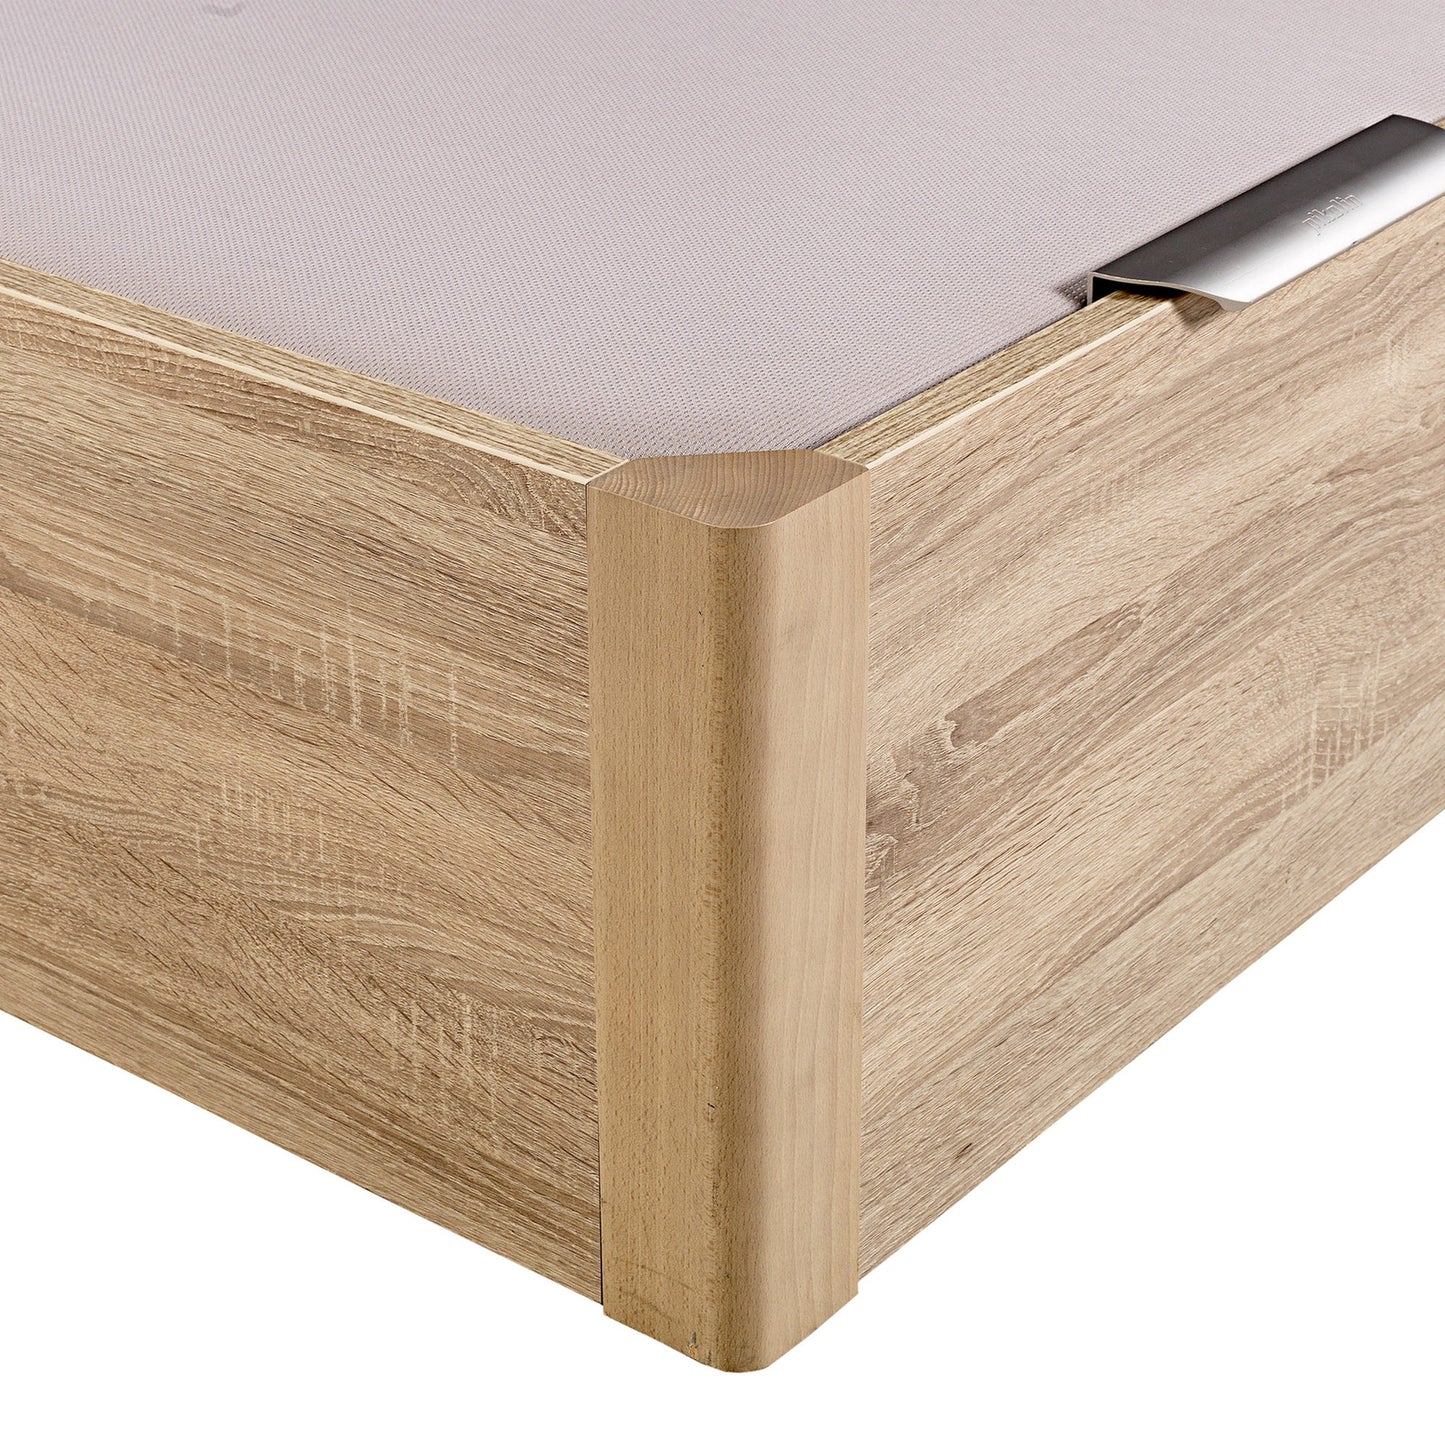 Canapé abatible de madera de alta capacidad tapa doble de color natural - DESIGN - 180x190